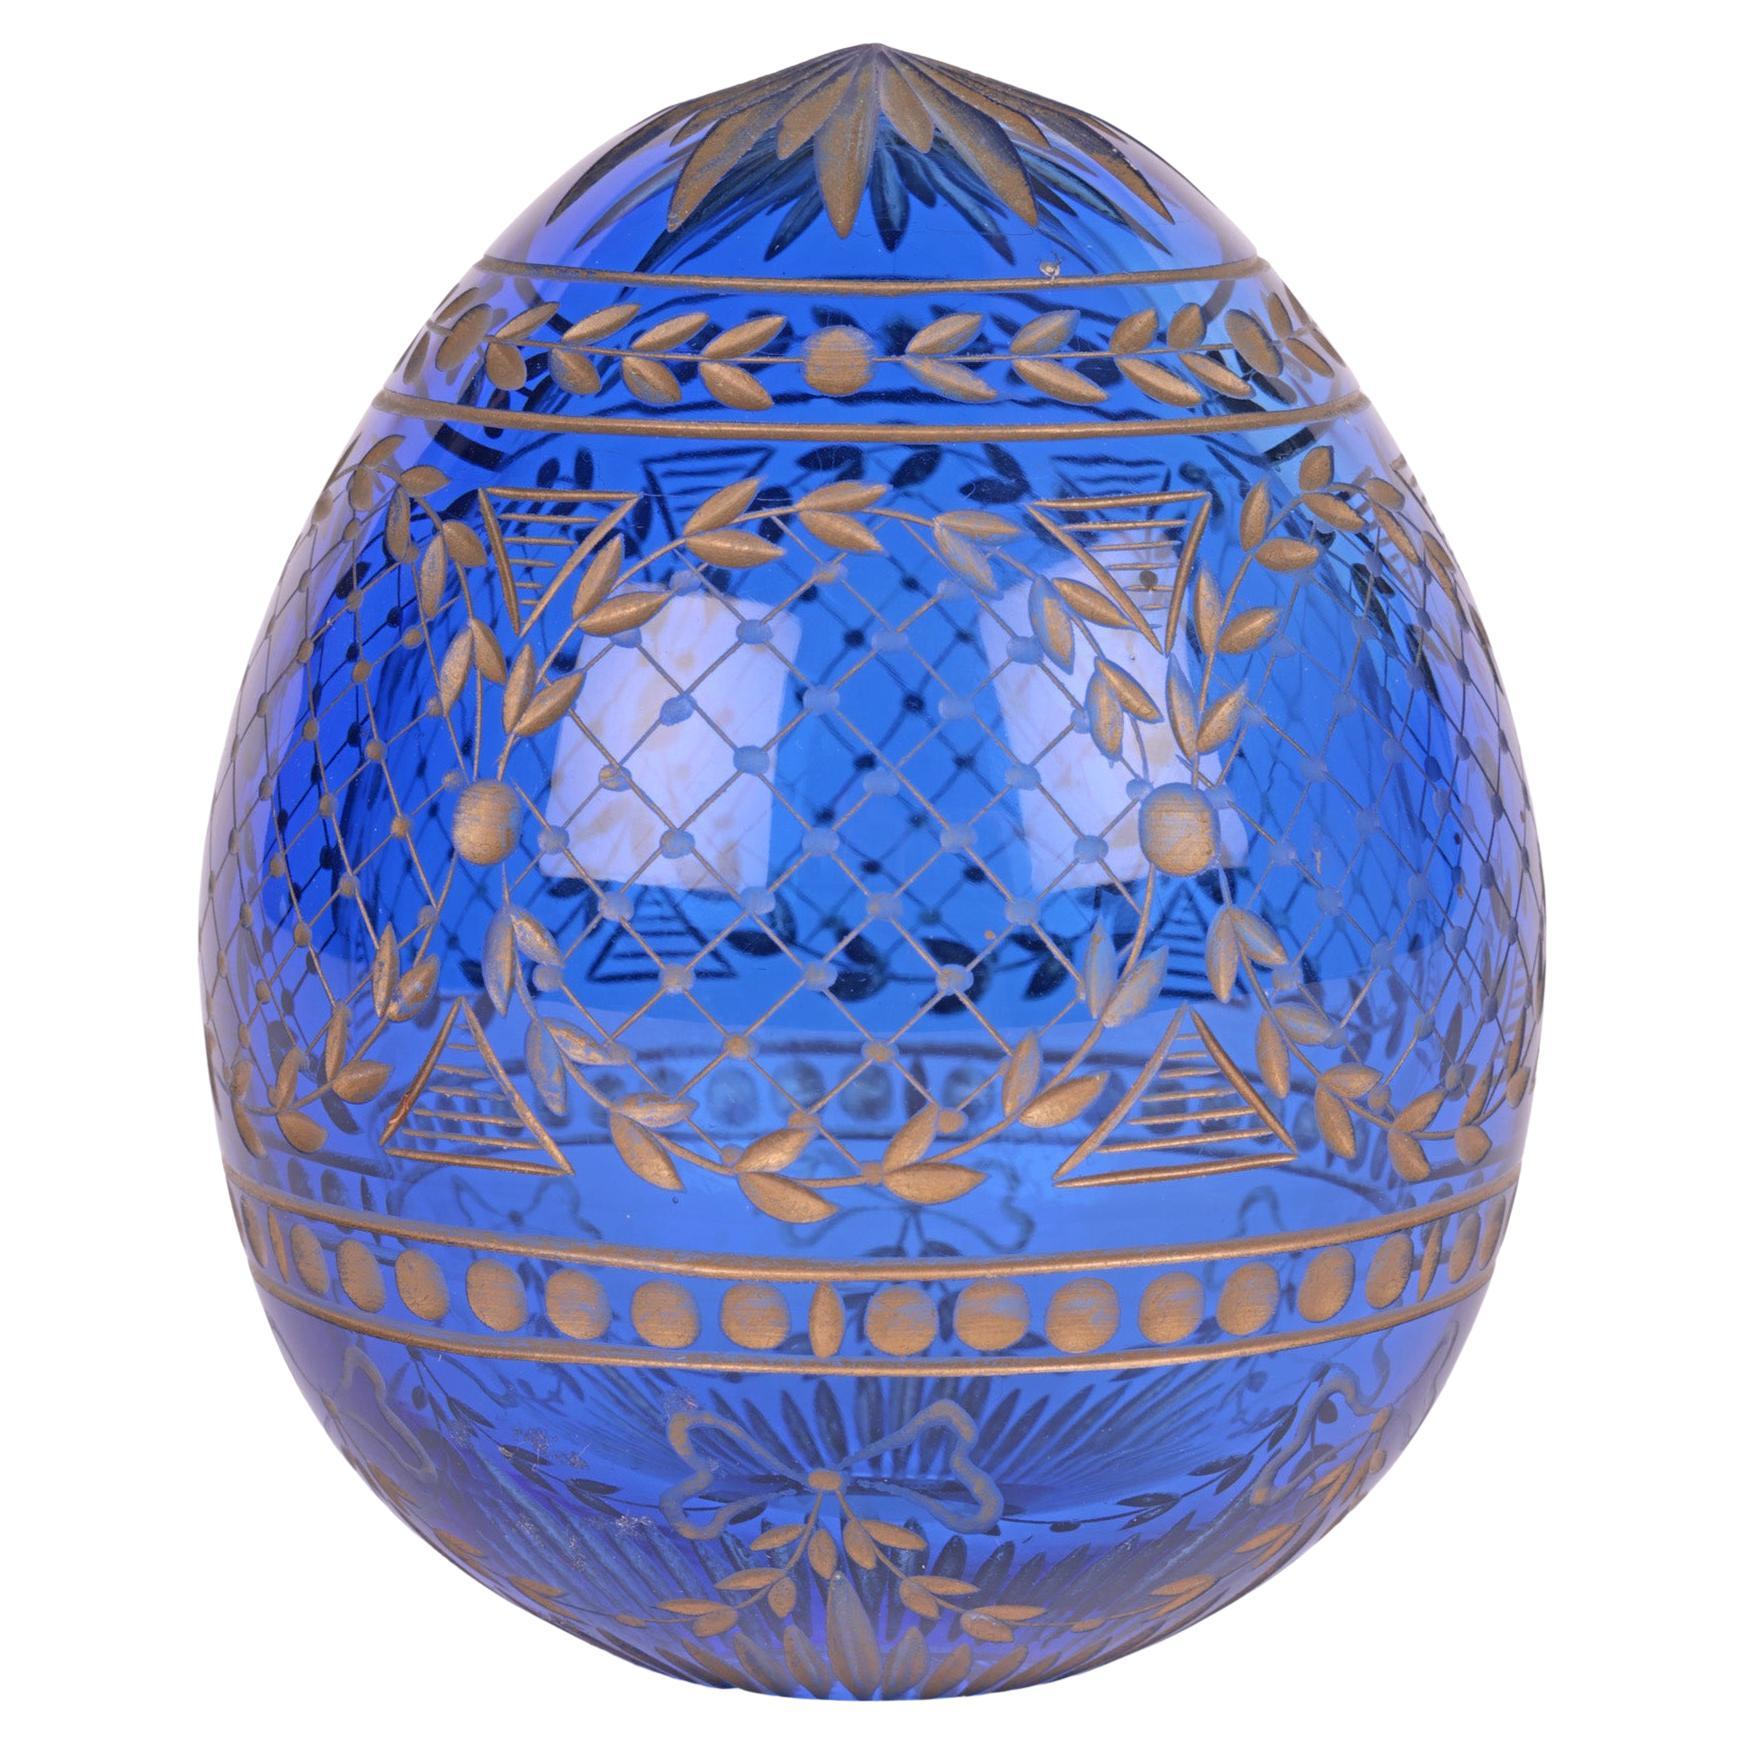 Russisches Faberge-Eier aus blauem Glas mit graviertem Muster, Faberge zugeschrieben